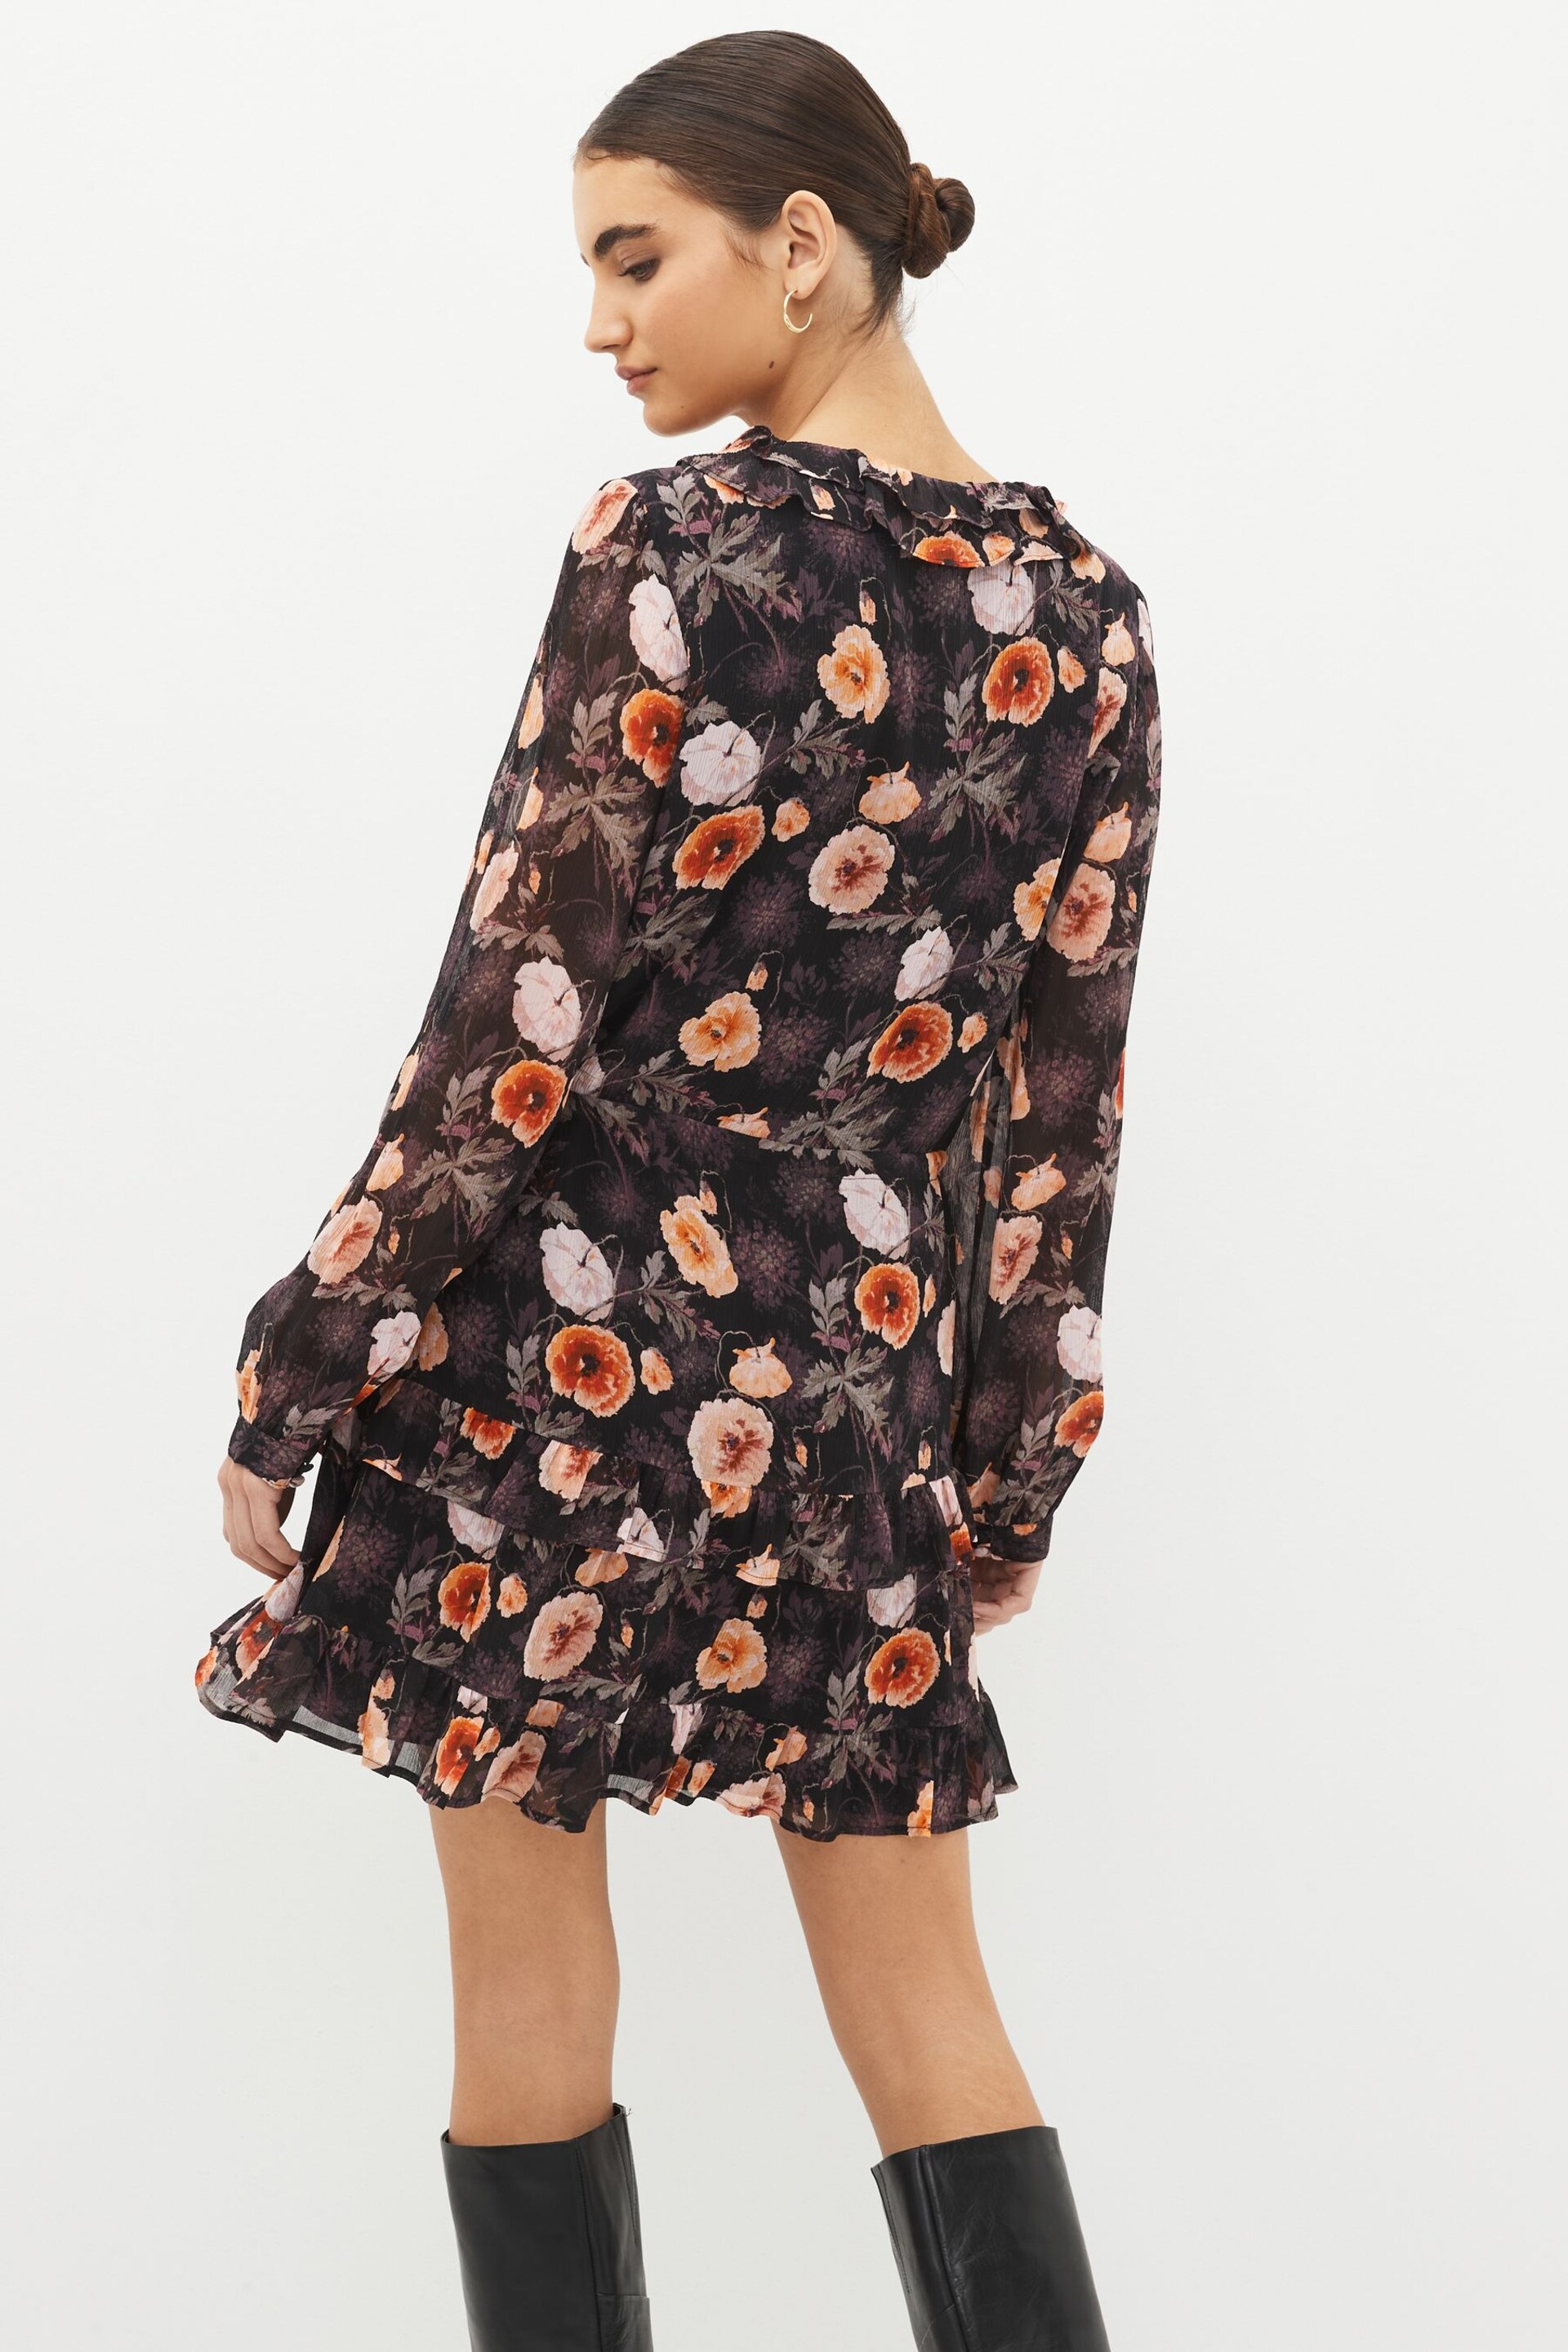 Paige Heirloom Floral Silk Black Mini Dress - Image 3 of 5